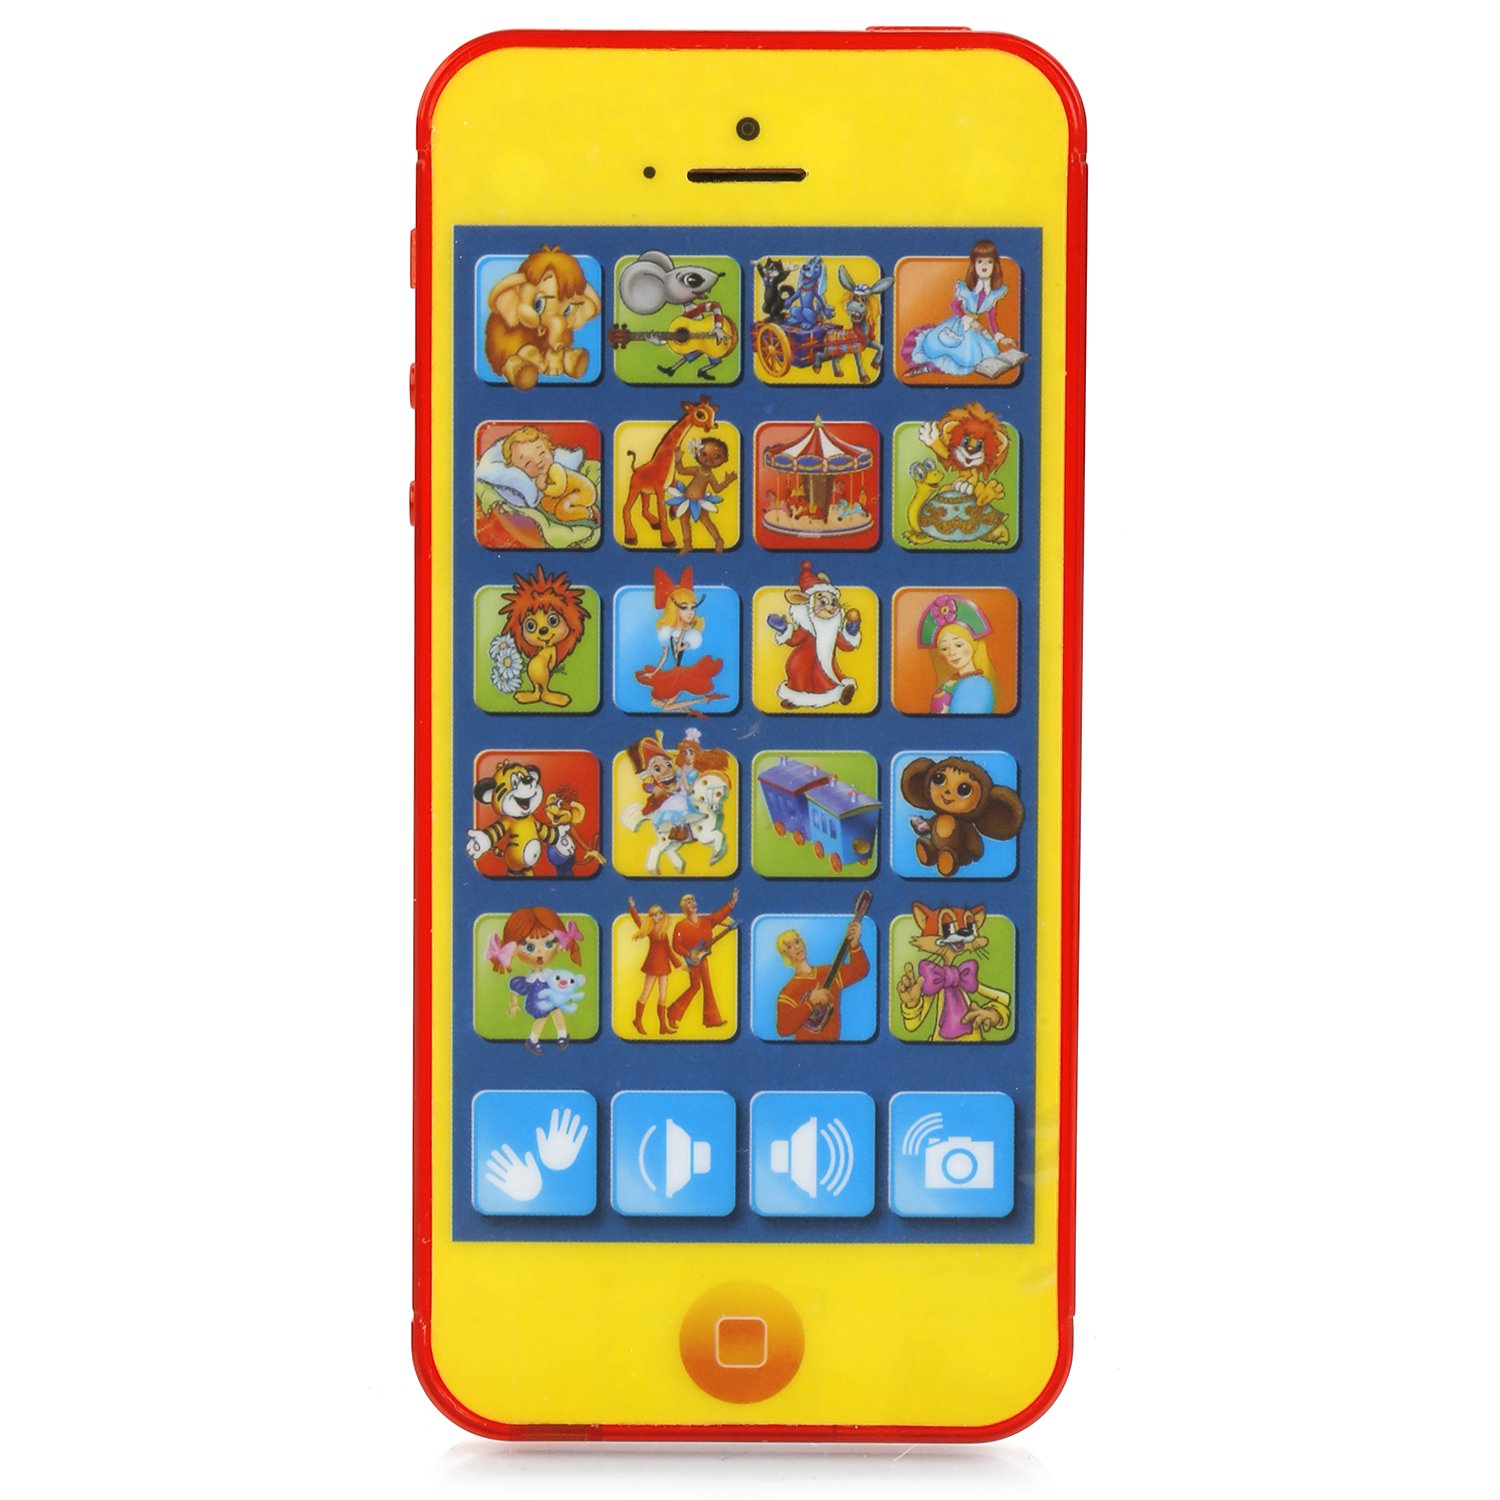 Экран телефона картинка для детей